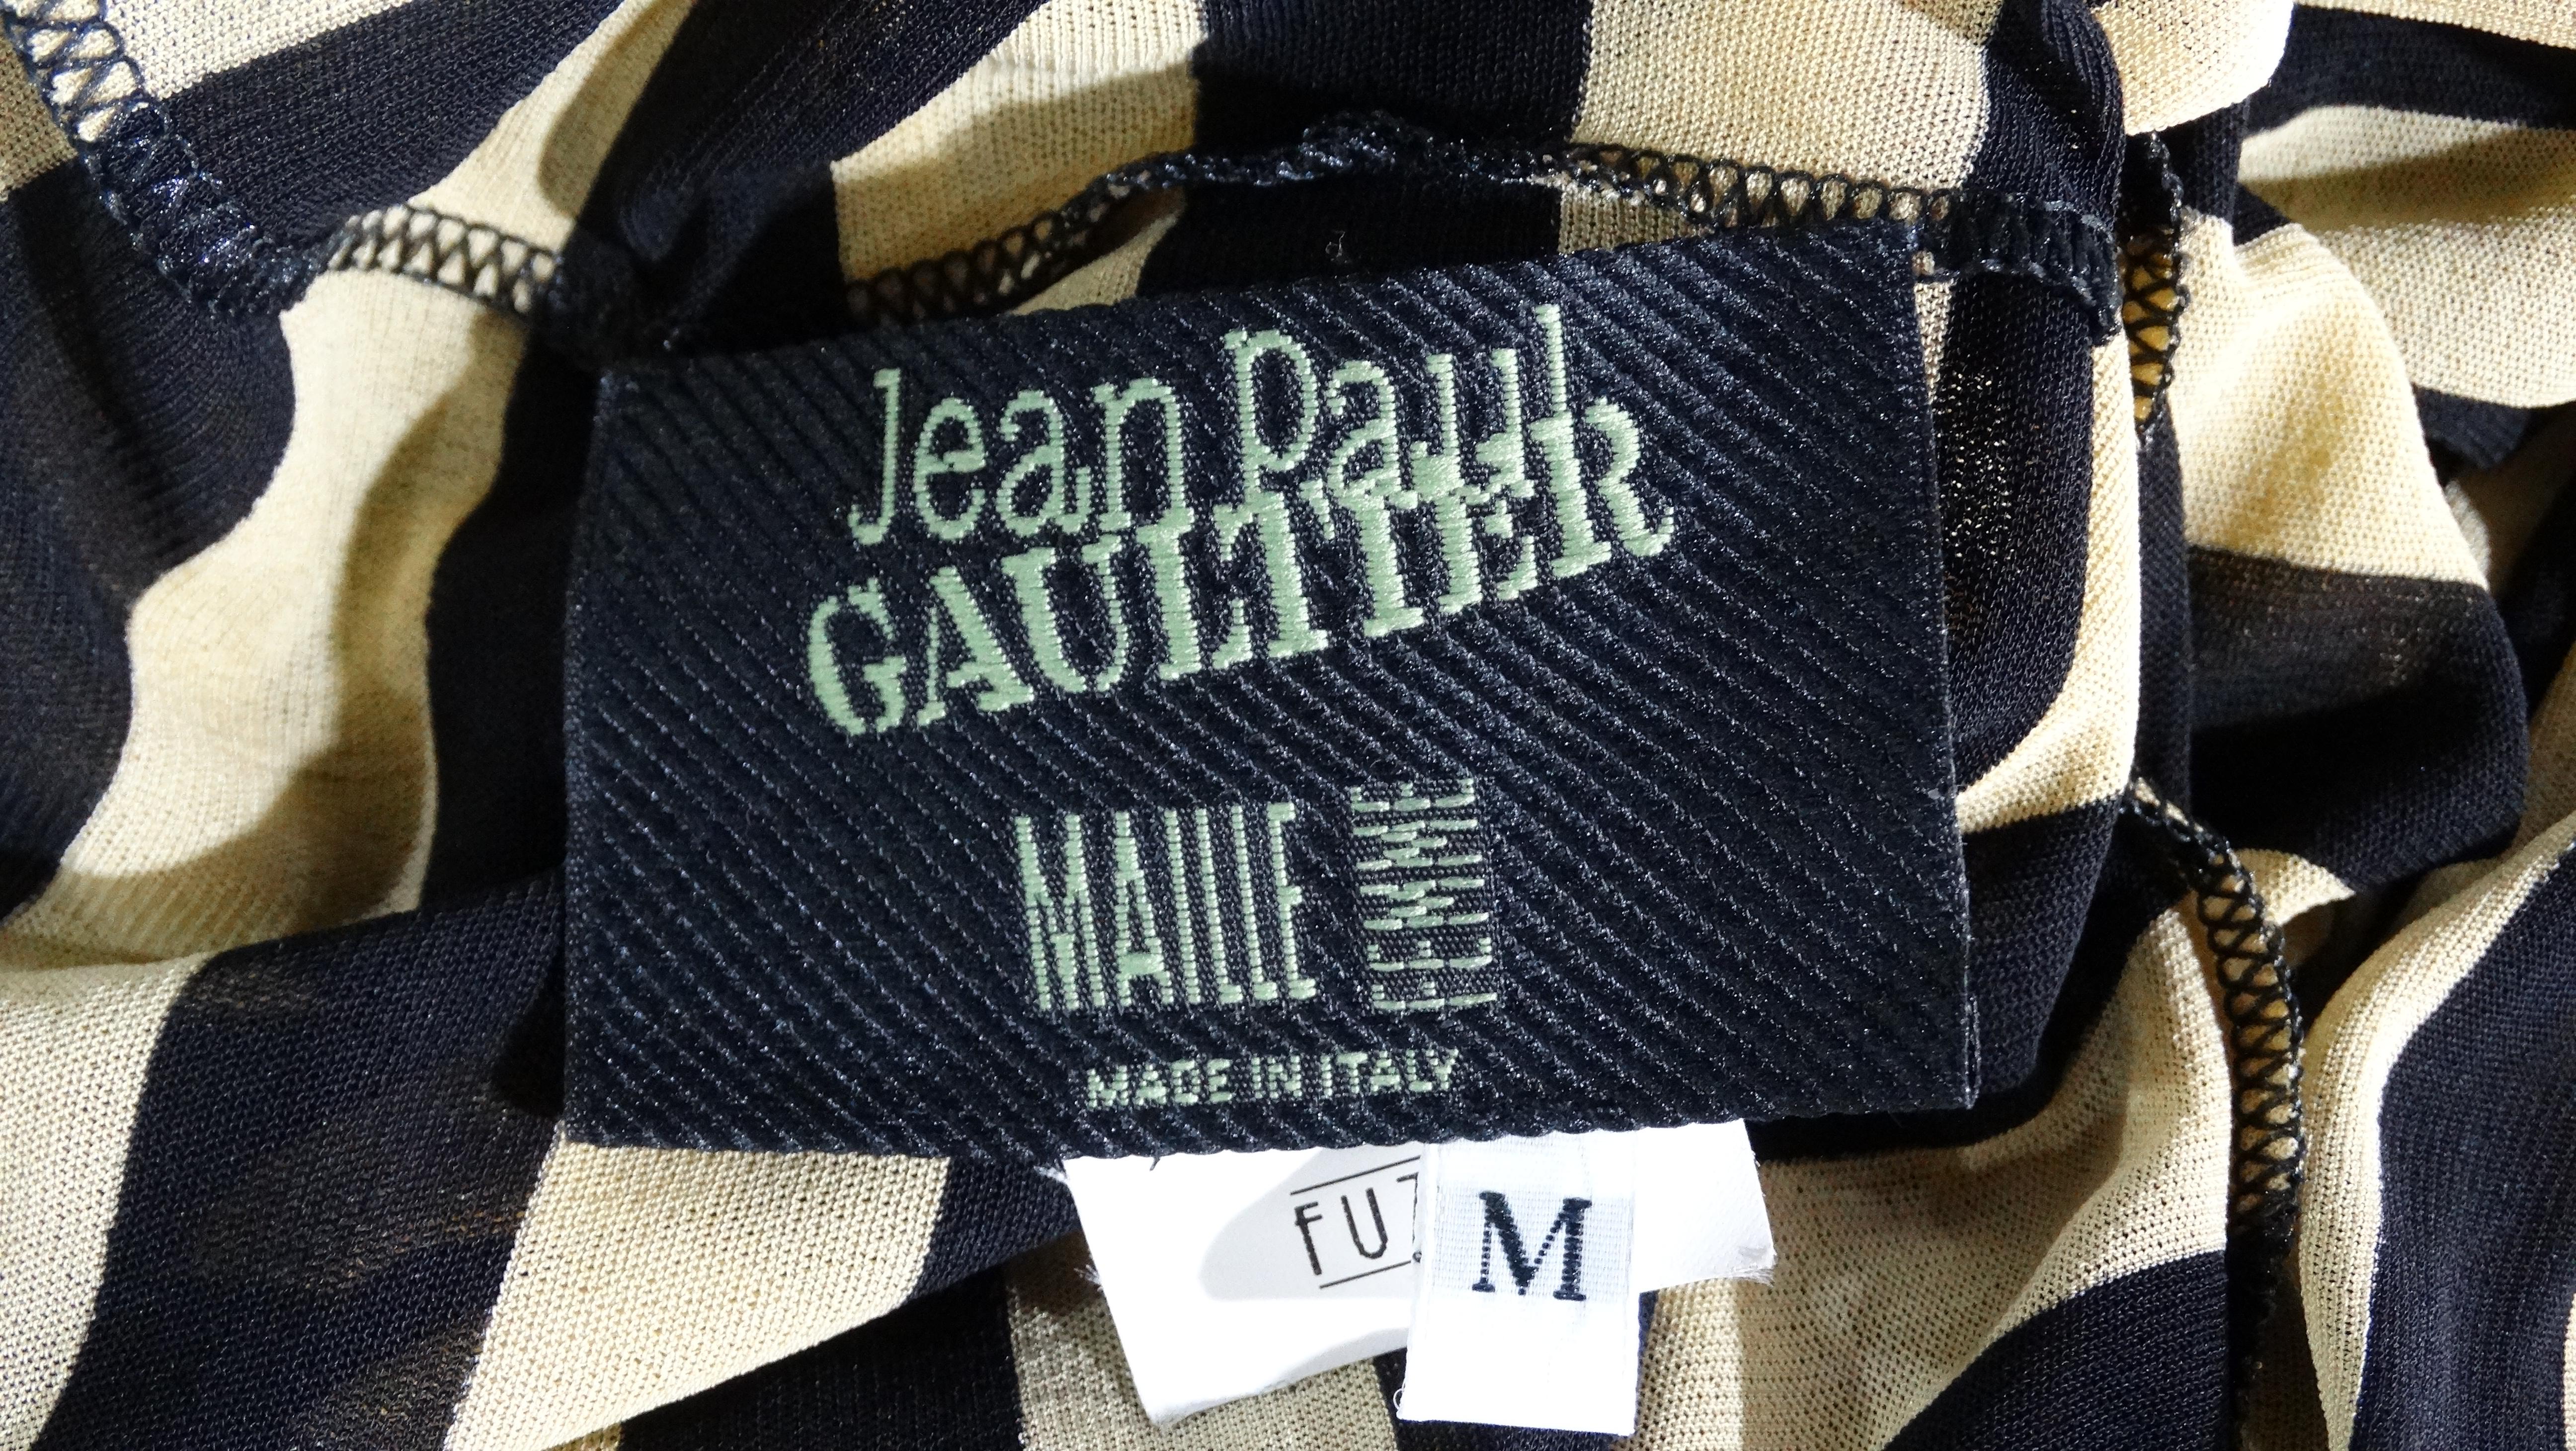 Black Jean Paul Gaultier 2003 Stripped Mesh Dress